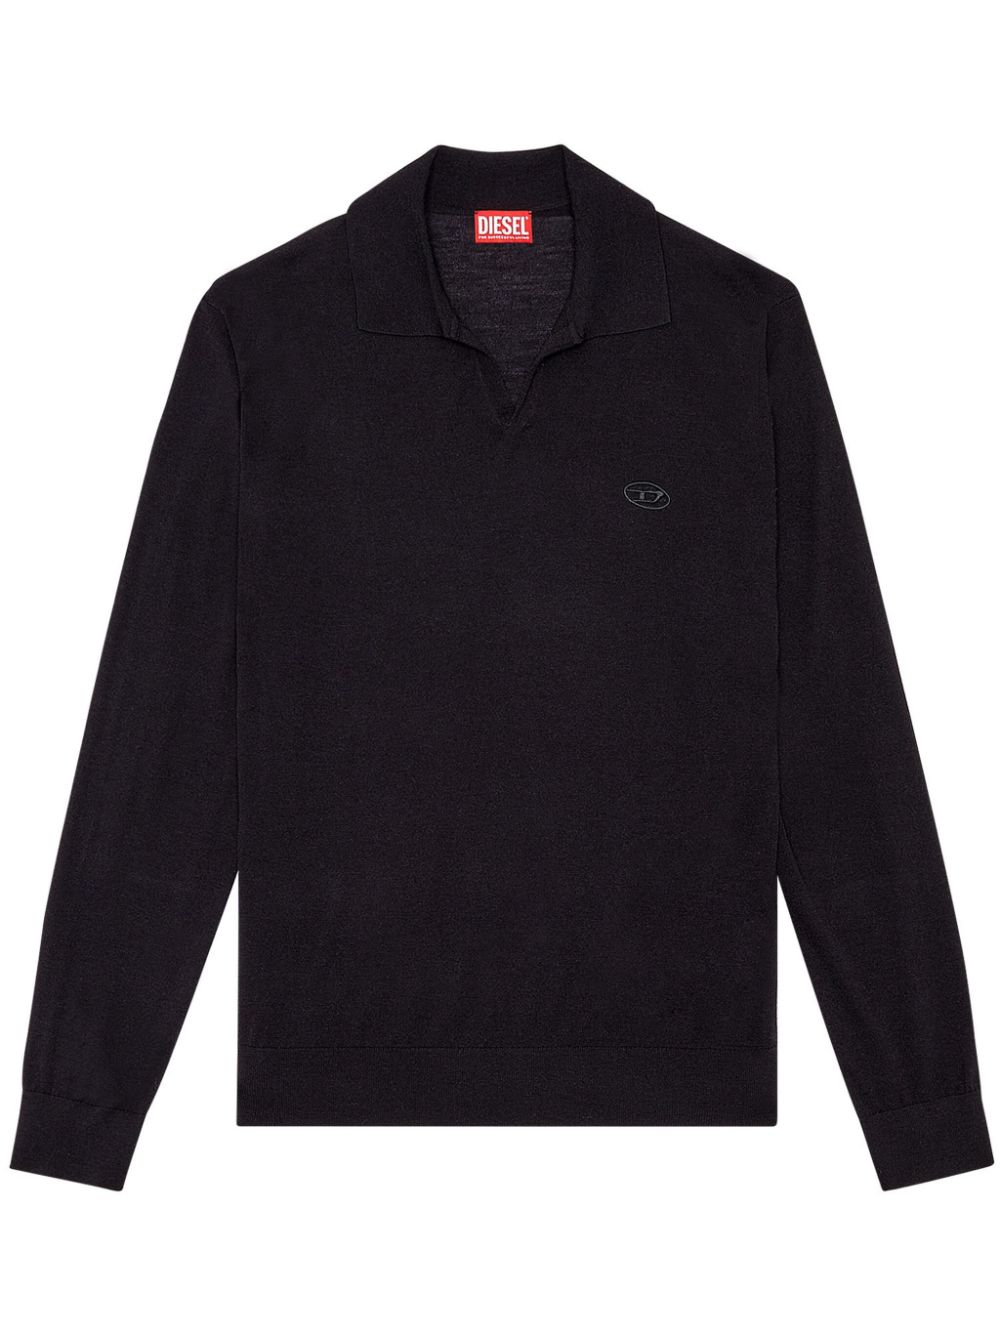 Diesel K-glare 羊毛polo衫 In Black